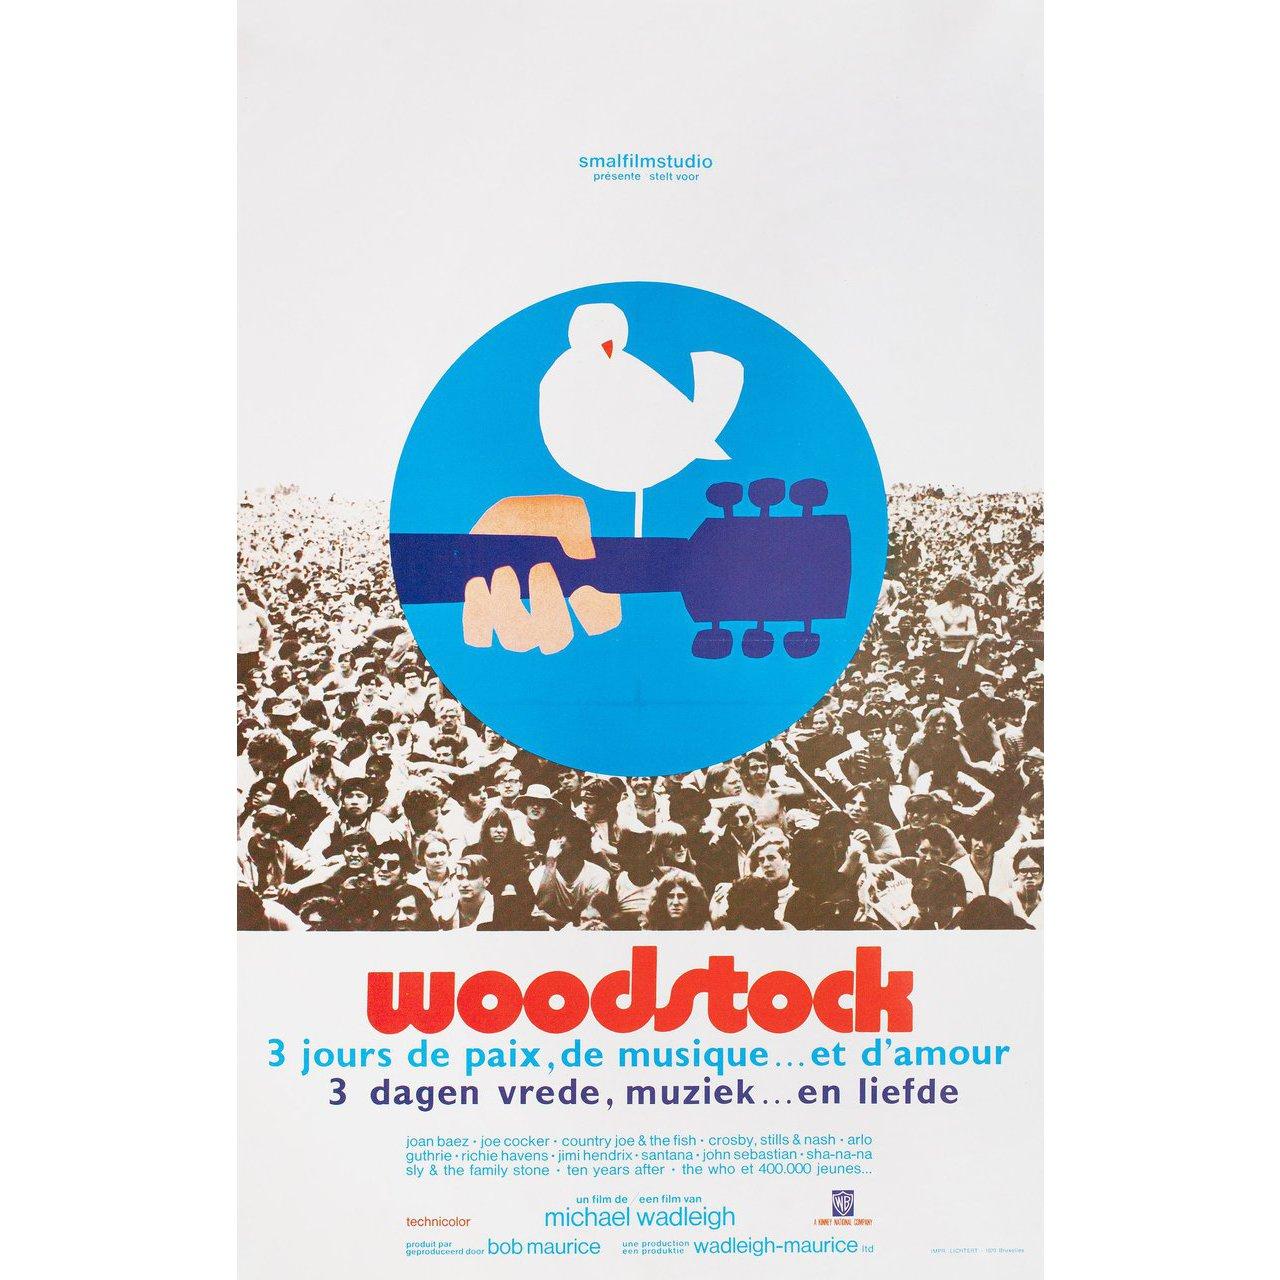 Affiche belge originale de 1970 par Arnold Skolnick pour le film documentaire Woodstock réalisé par Michael Wadleigh avec Richie Havens / Joan Baez / The Who / Sha-Na-Na. Bon état, plié. De nombreuses affiches originales ont été publiées pliées ou